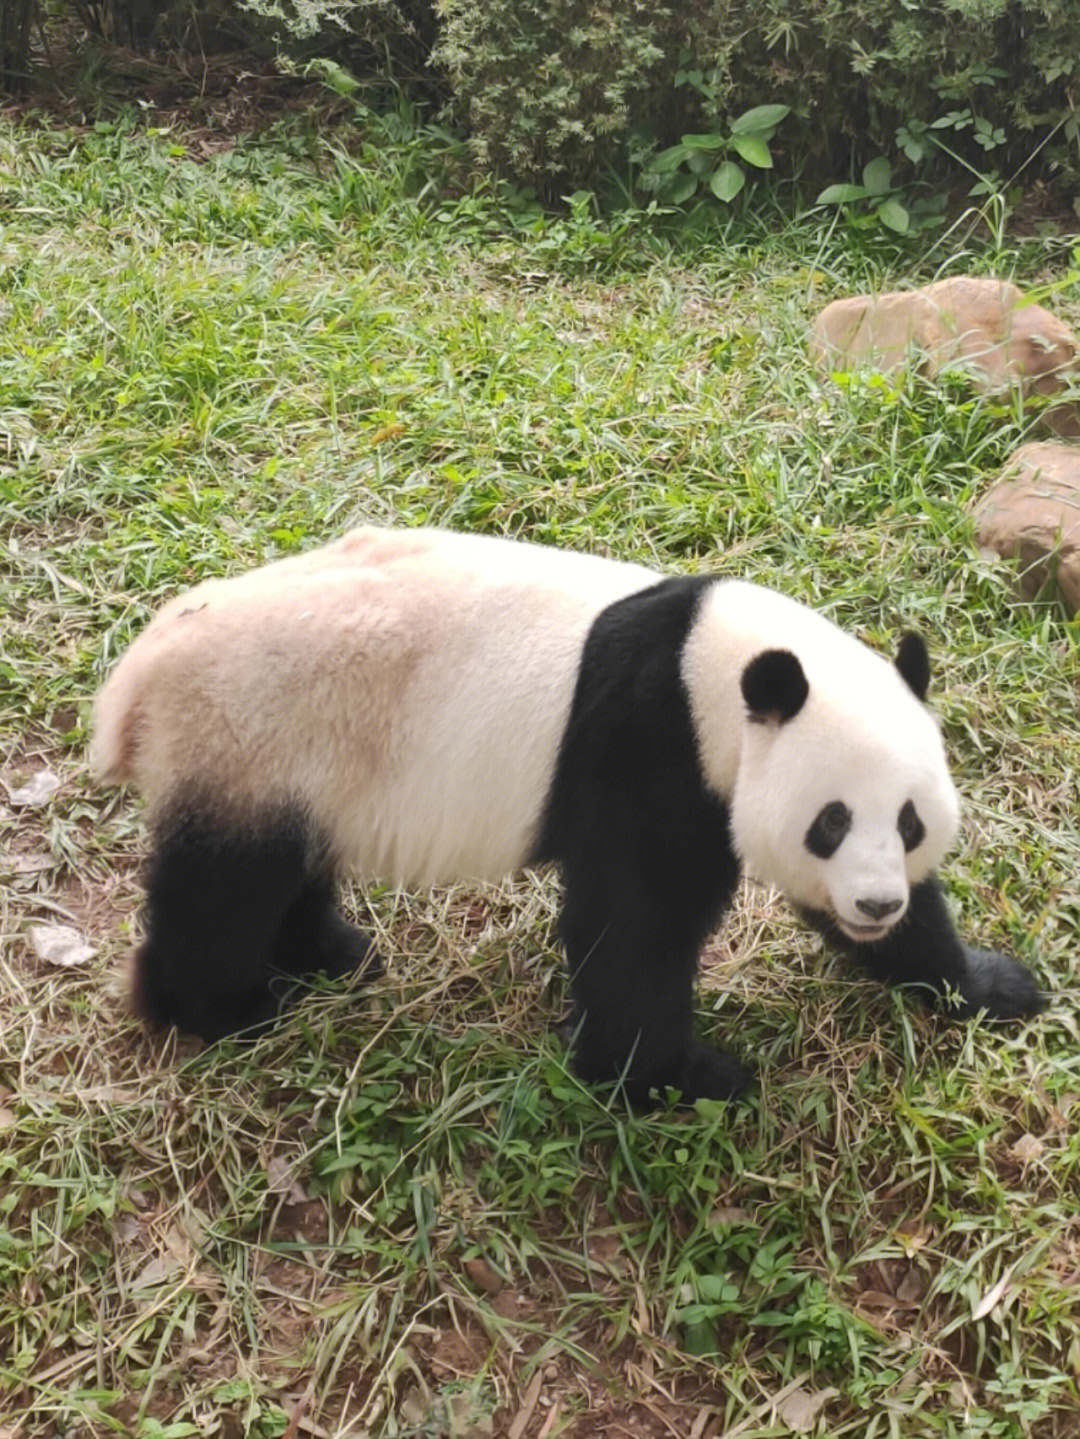 广州动物园熊猫 真的是太可爱了 从等待它起床到出来,真的不容易 一